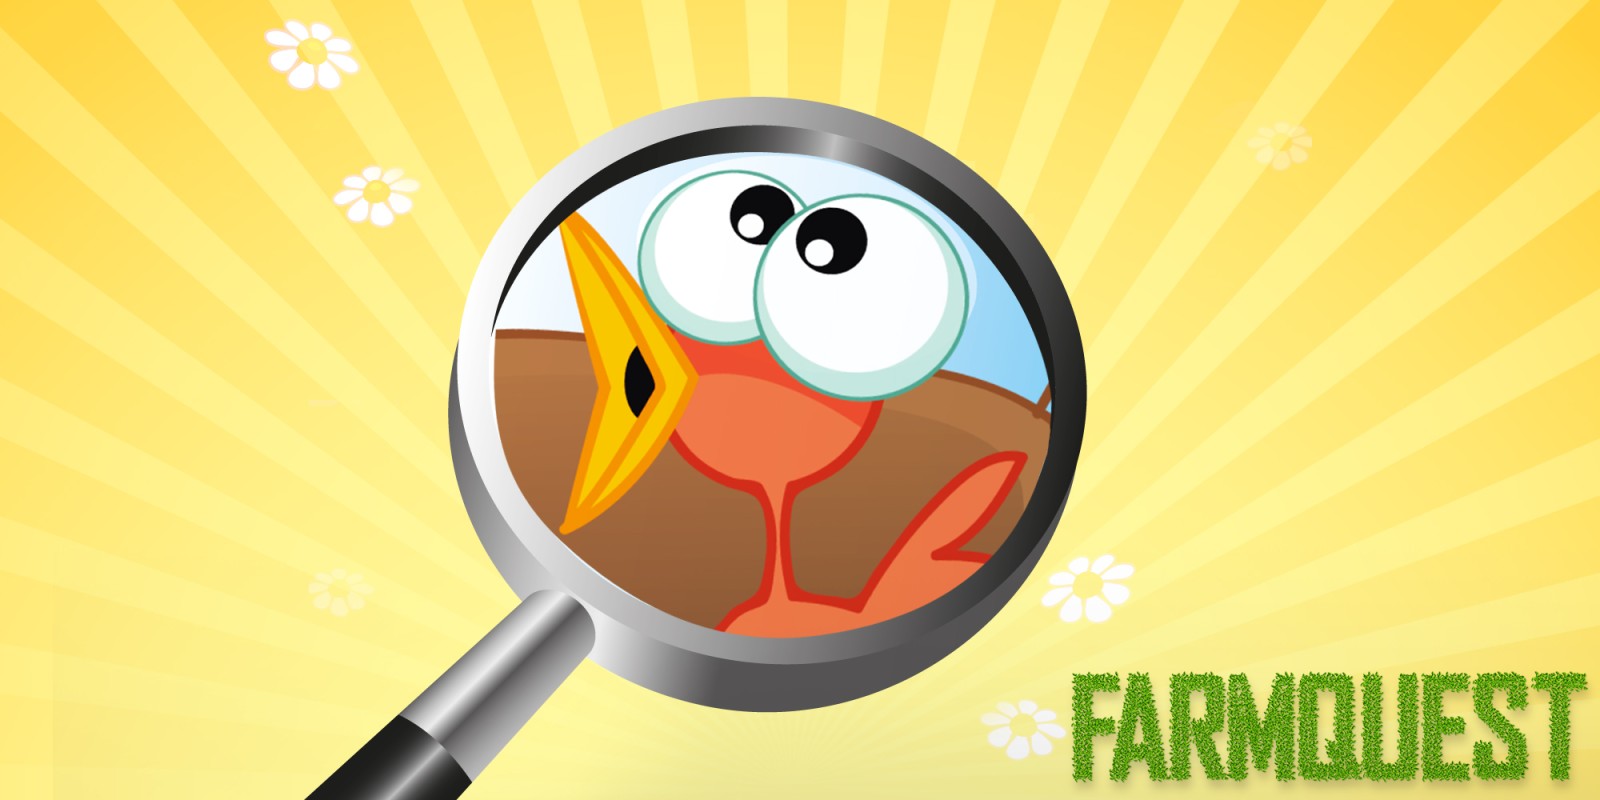 Farmquest - Het spel met zoekplaatjes voor kinderen